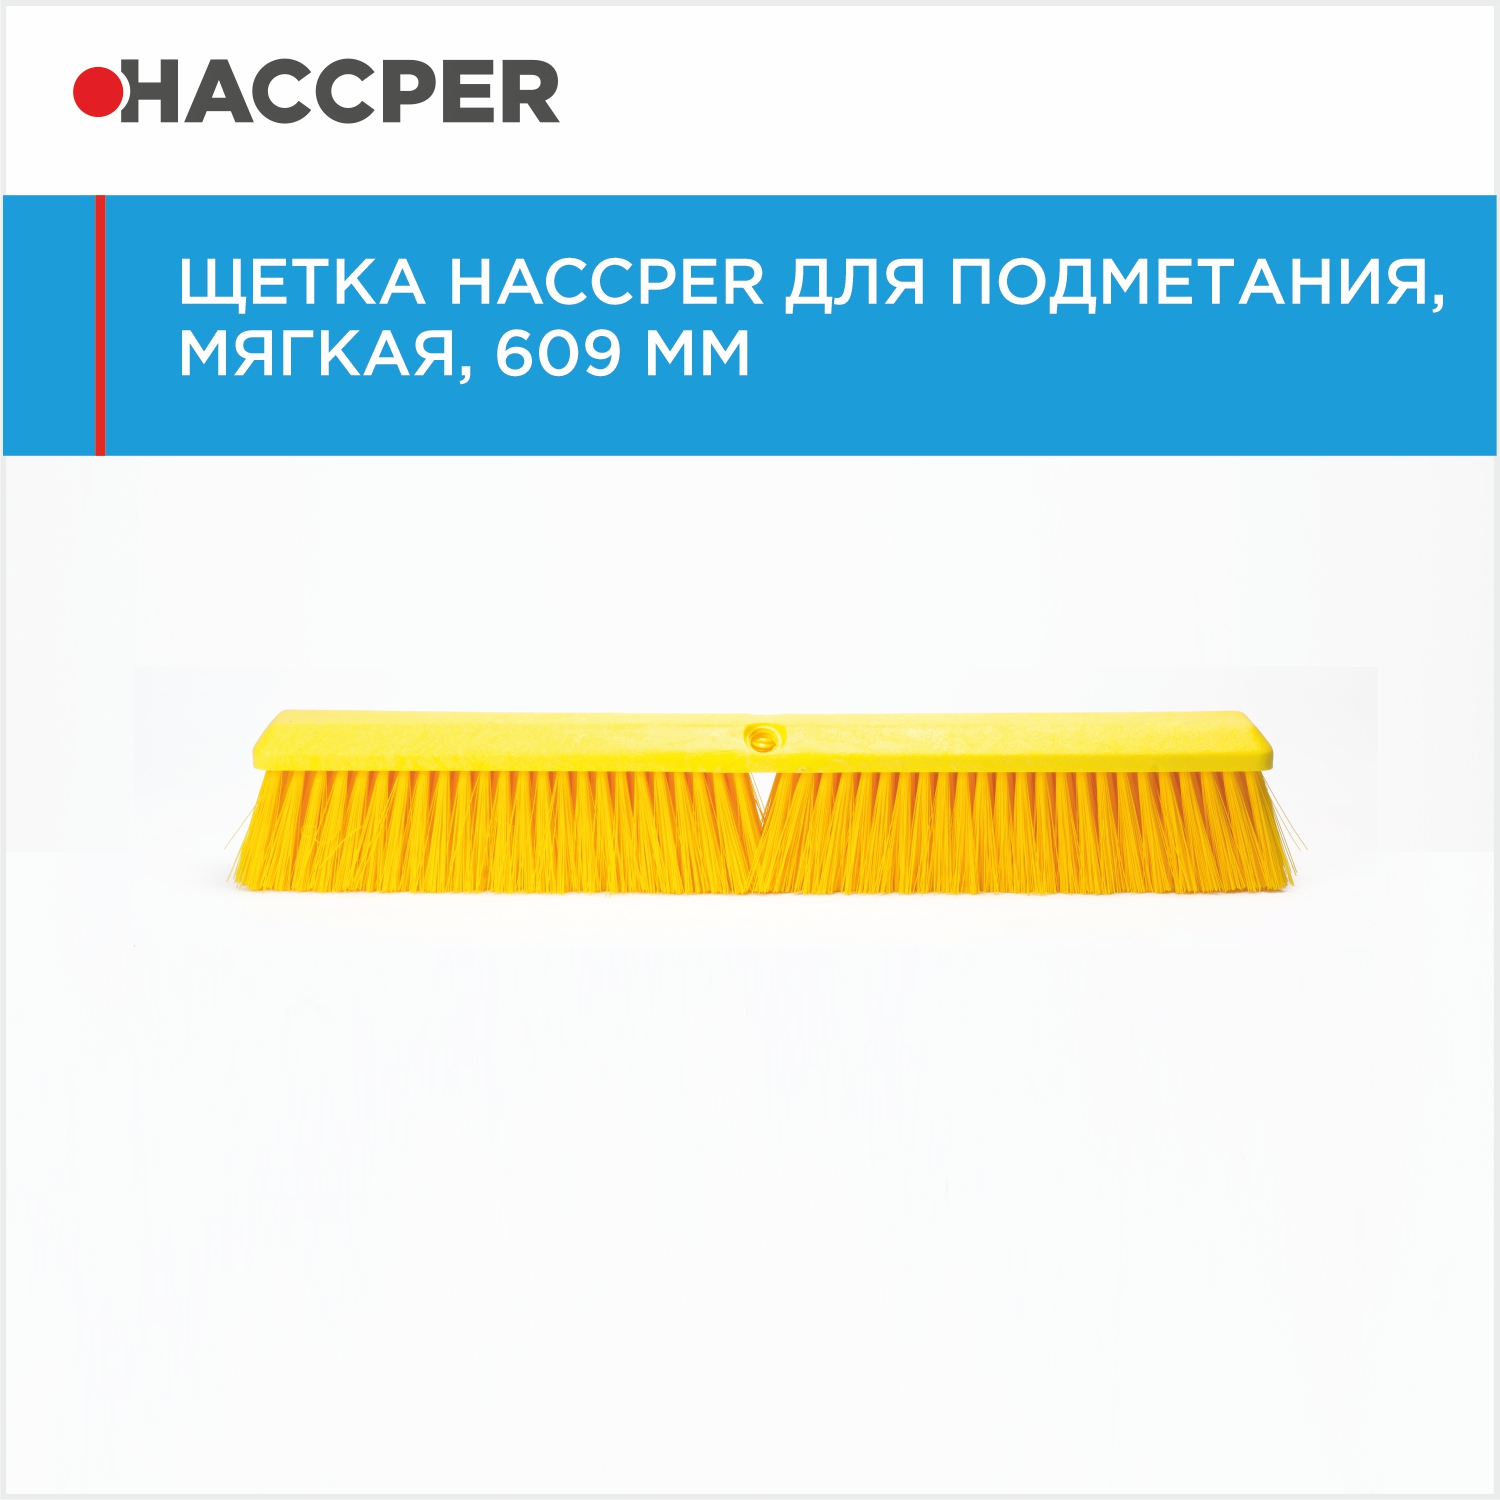 Щетка HACCPER для подметания, мягкая, 609 мм, желтая